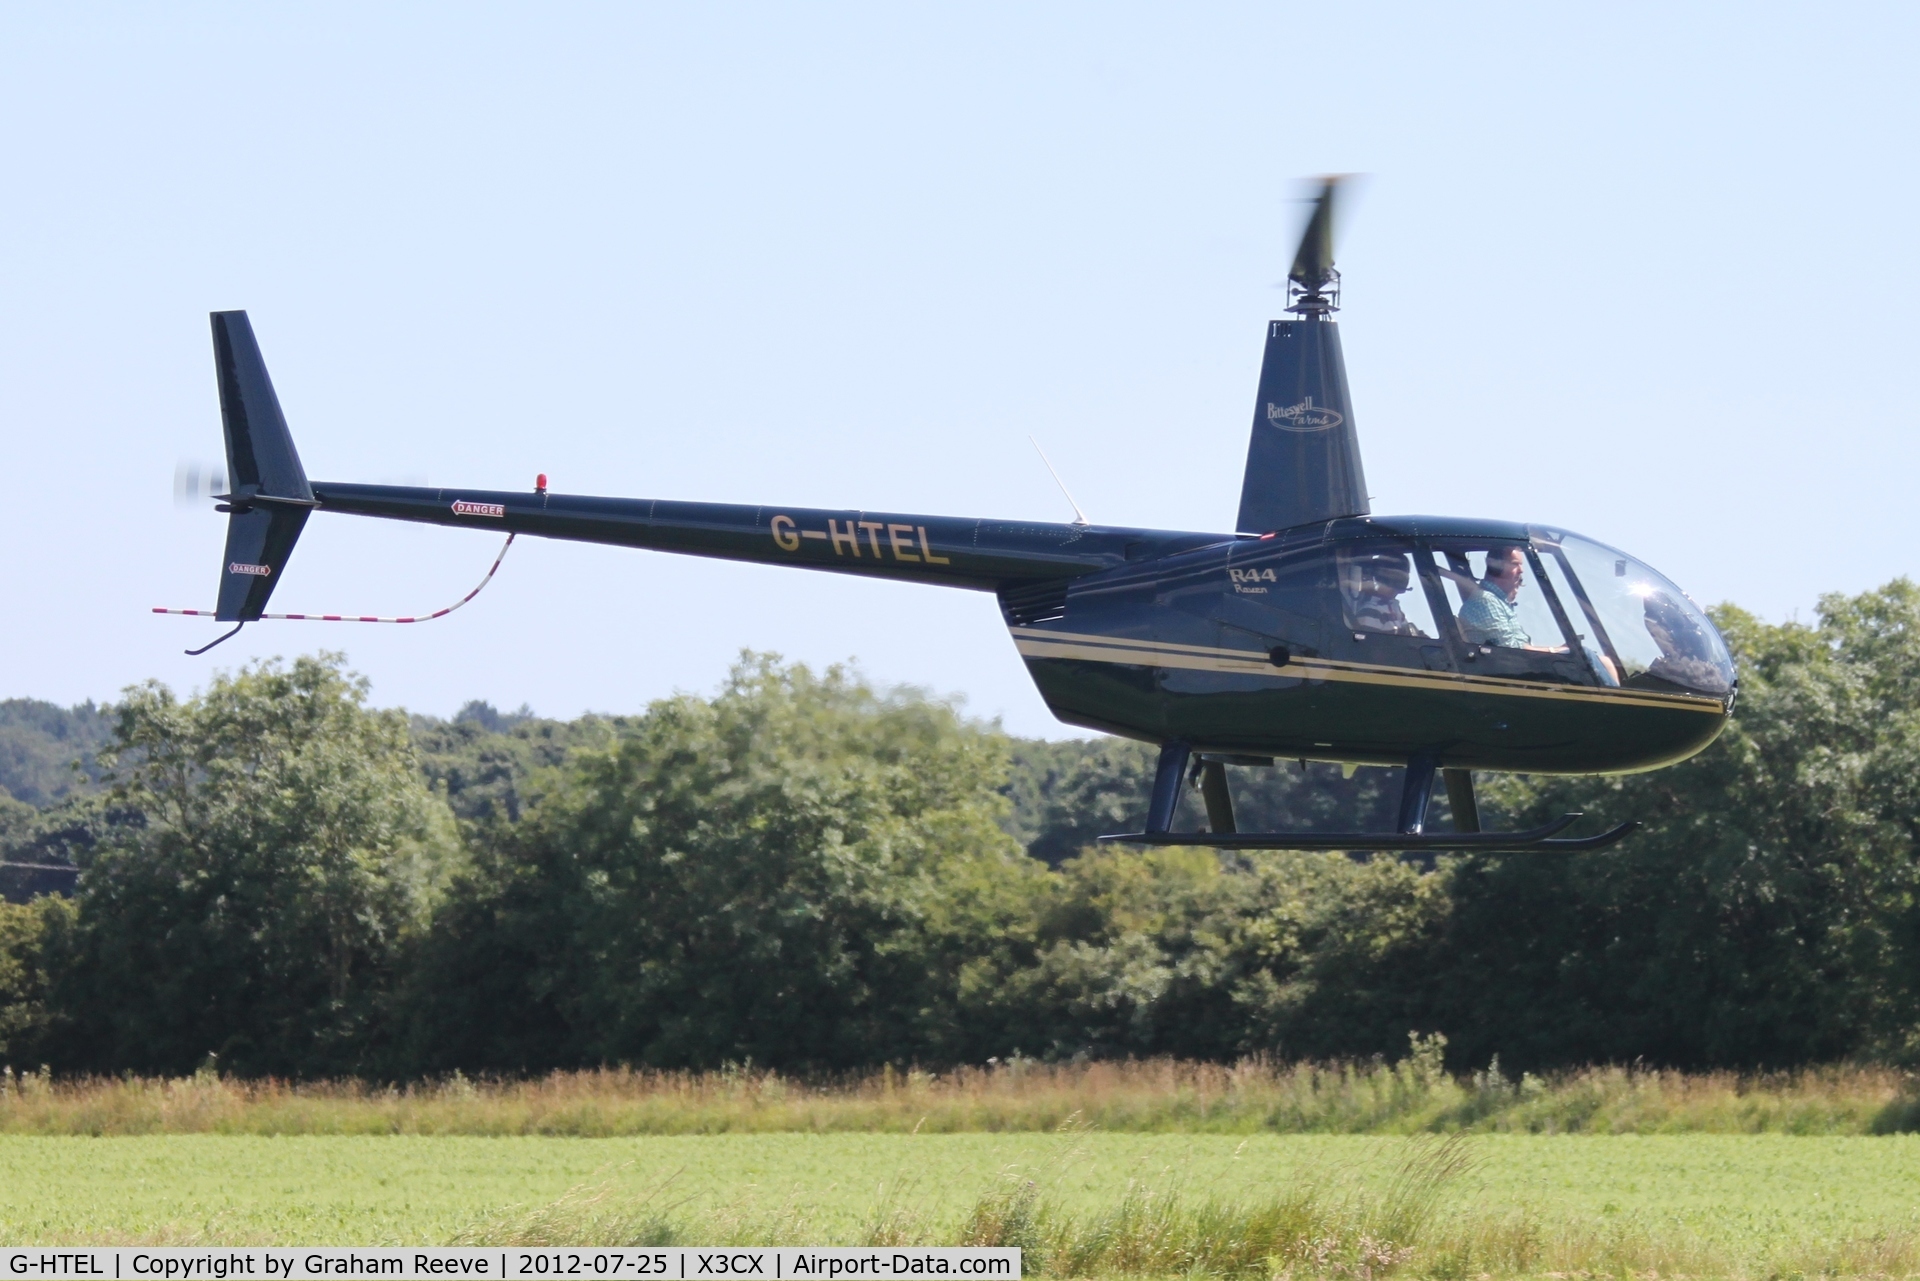 G-HTEL, 2002 Robinson R44 Raven C/N 1155, Just arrived at Northrepps.